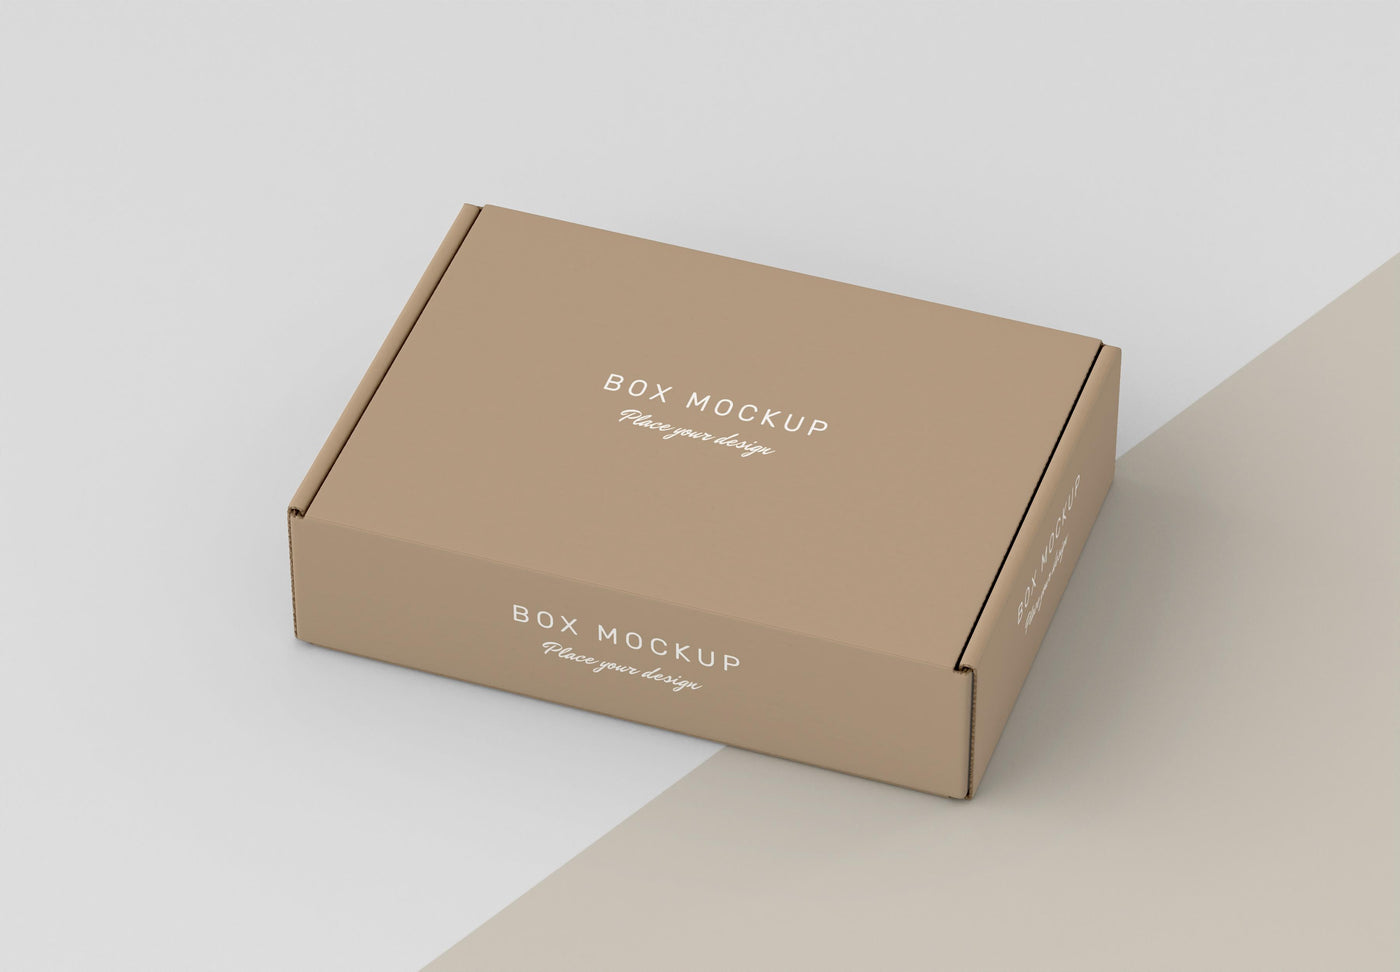 Custom Packaging Boxes